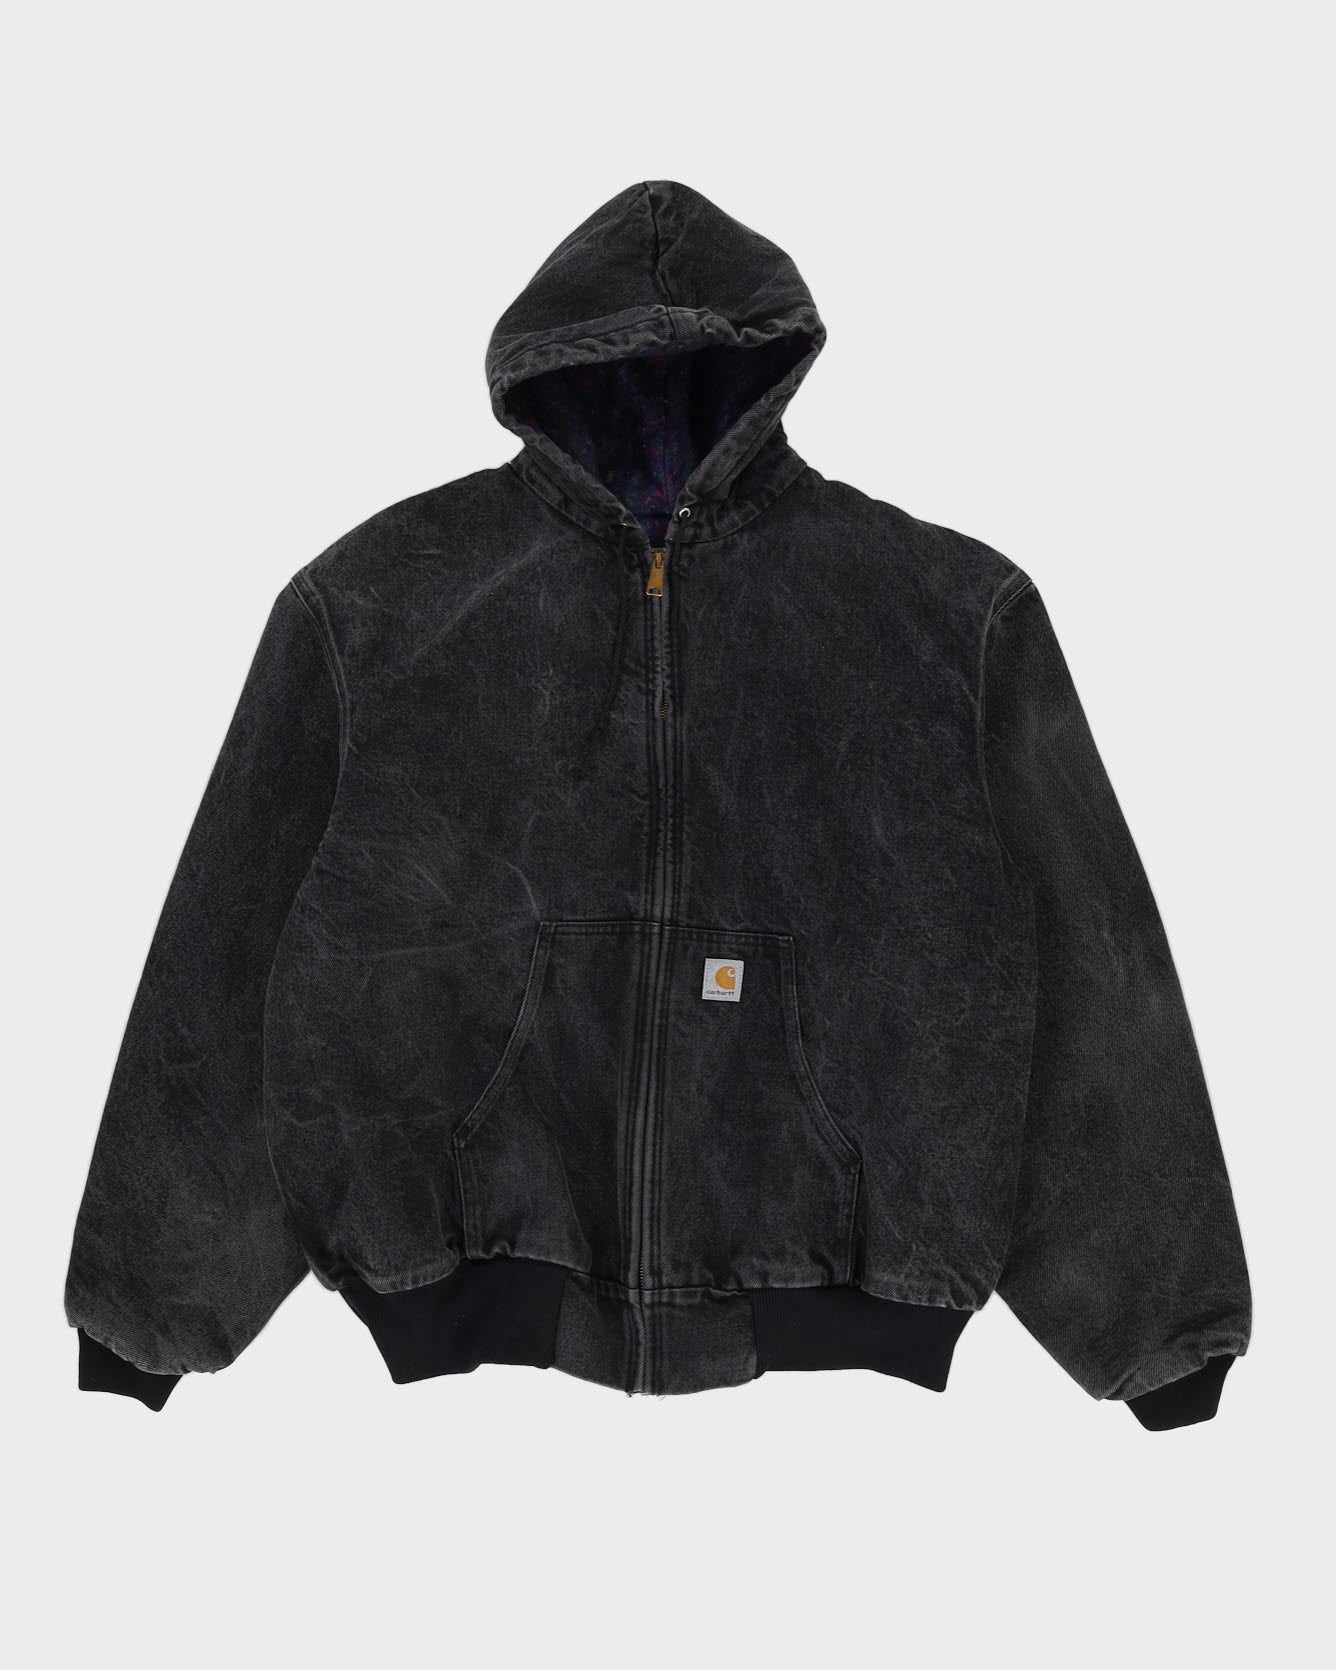 Vintage 90s Carhartt Black Workwear Fleece Lined Hooded Jacket - XXL